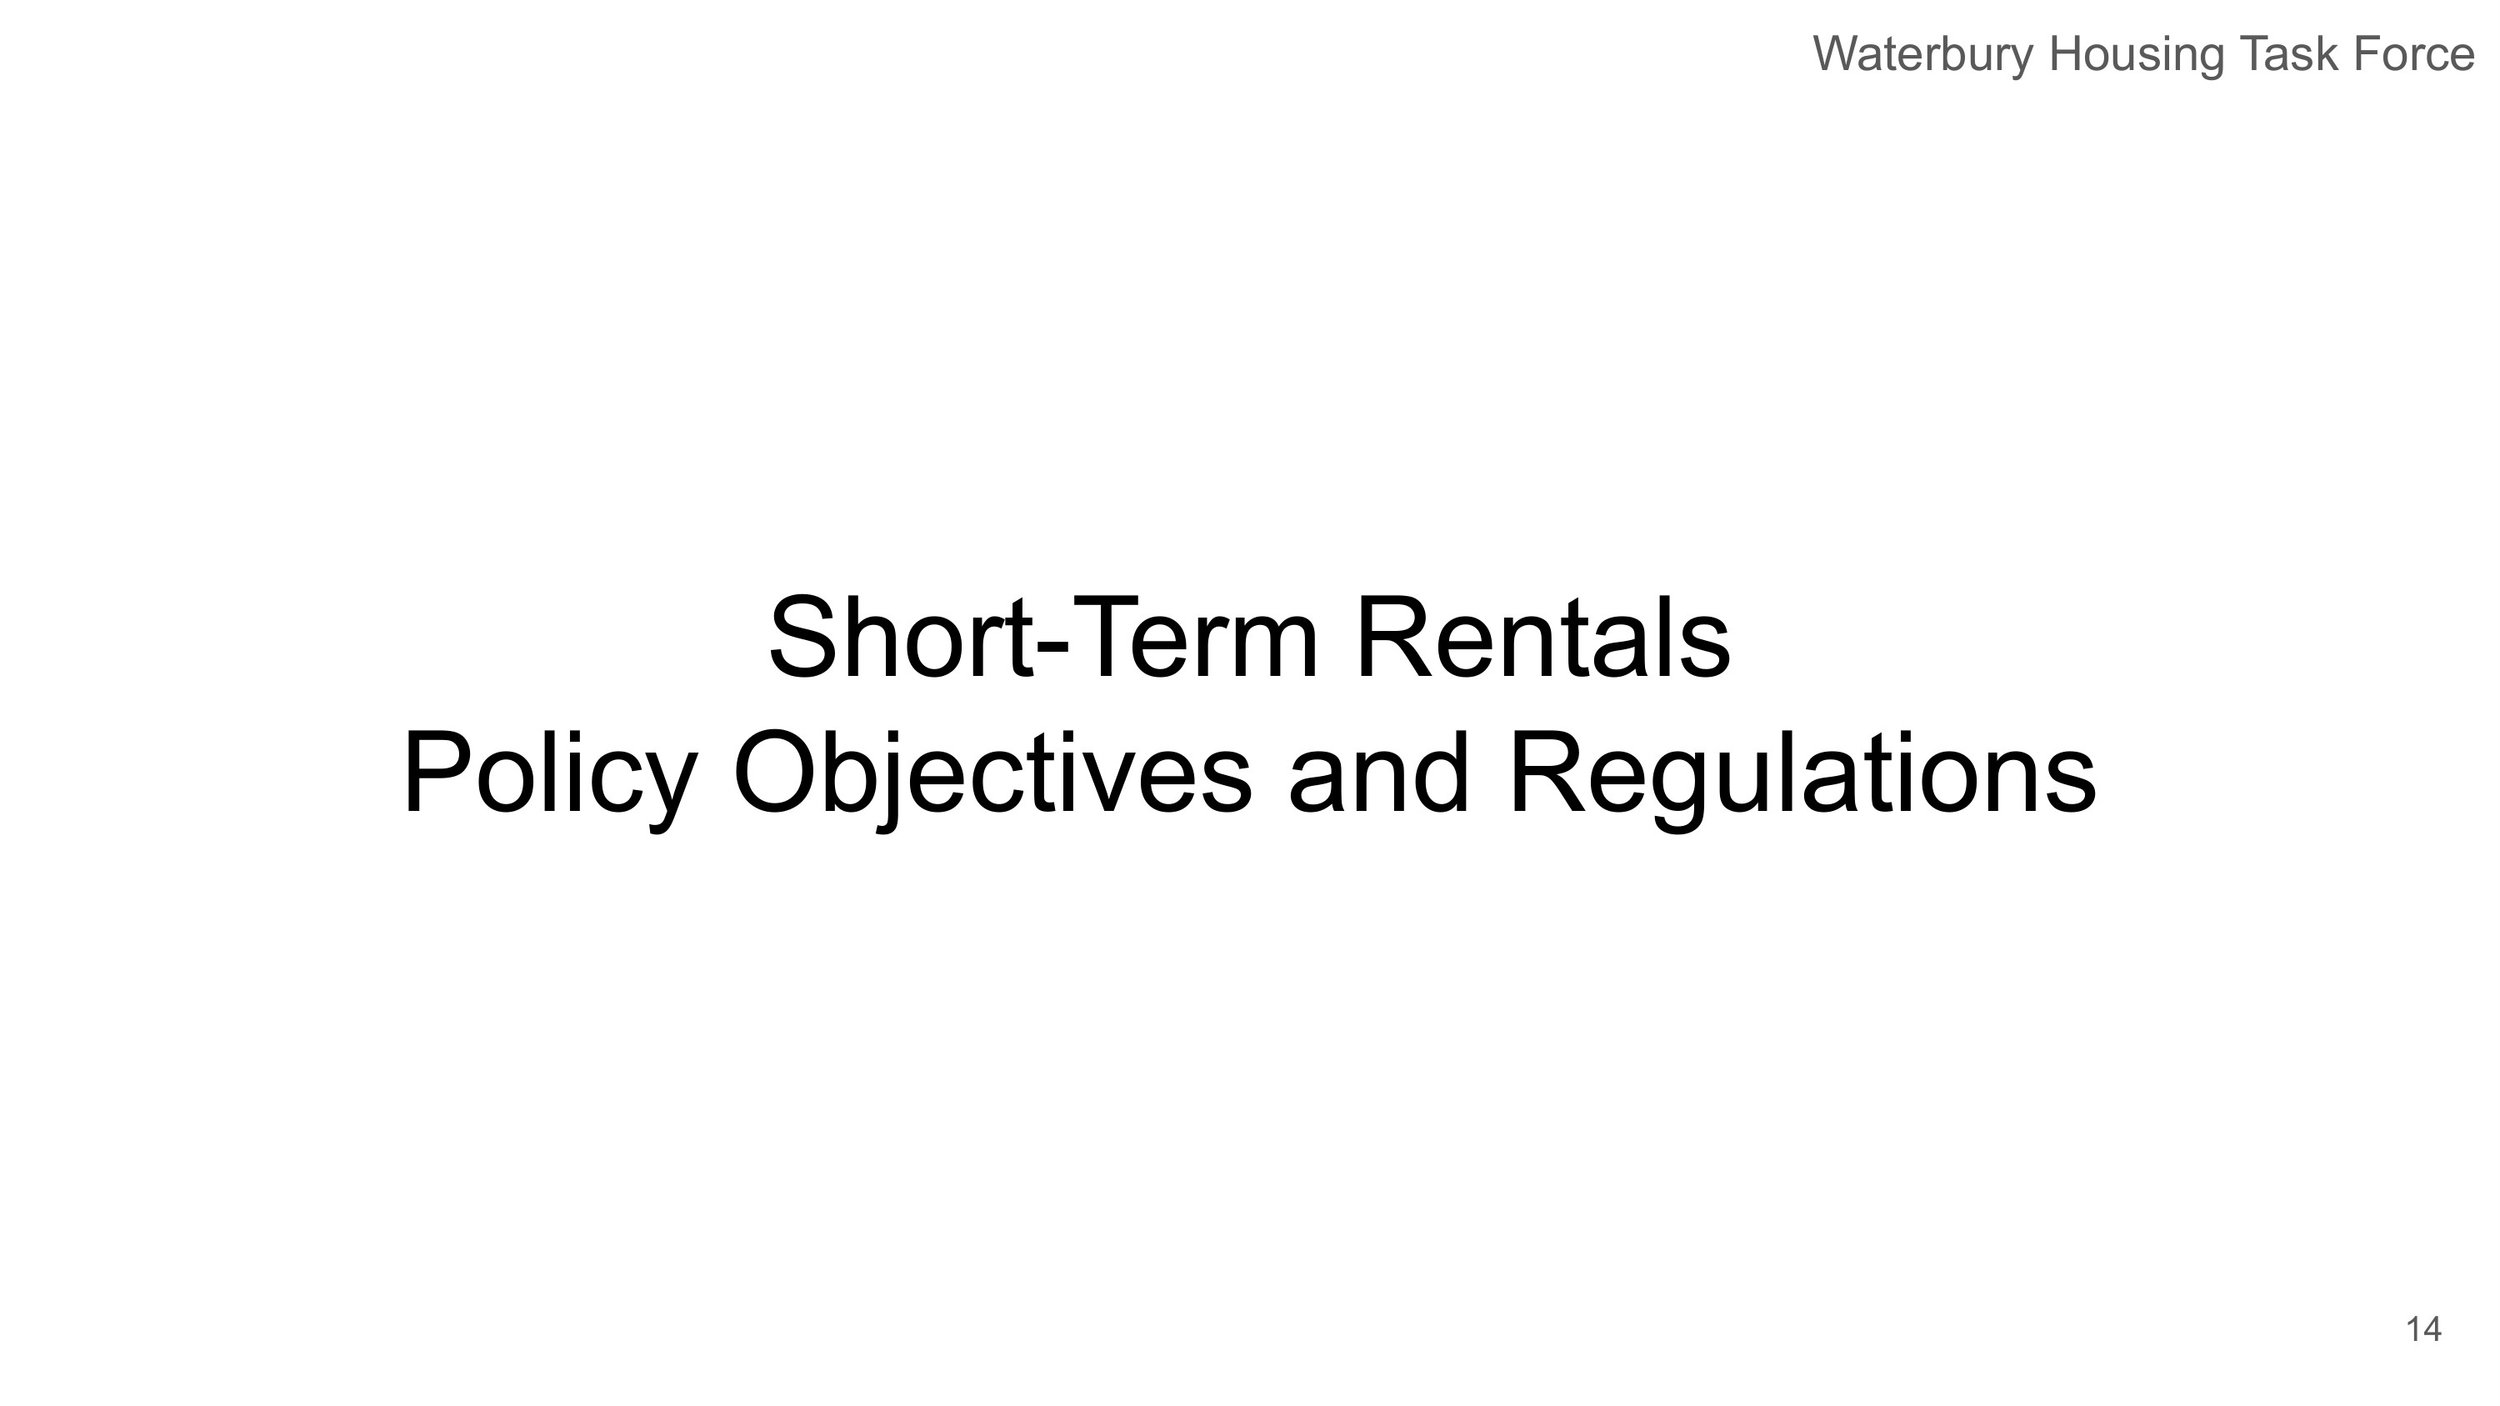 Waterbury Housing Task Force - STR Assessment-14.jpg